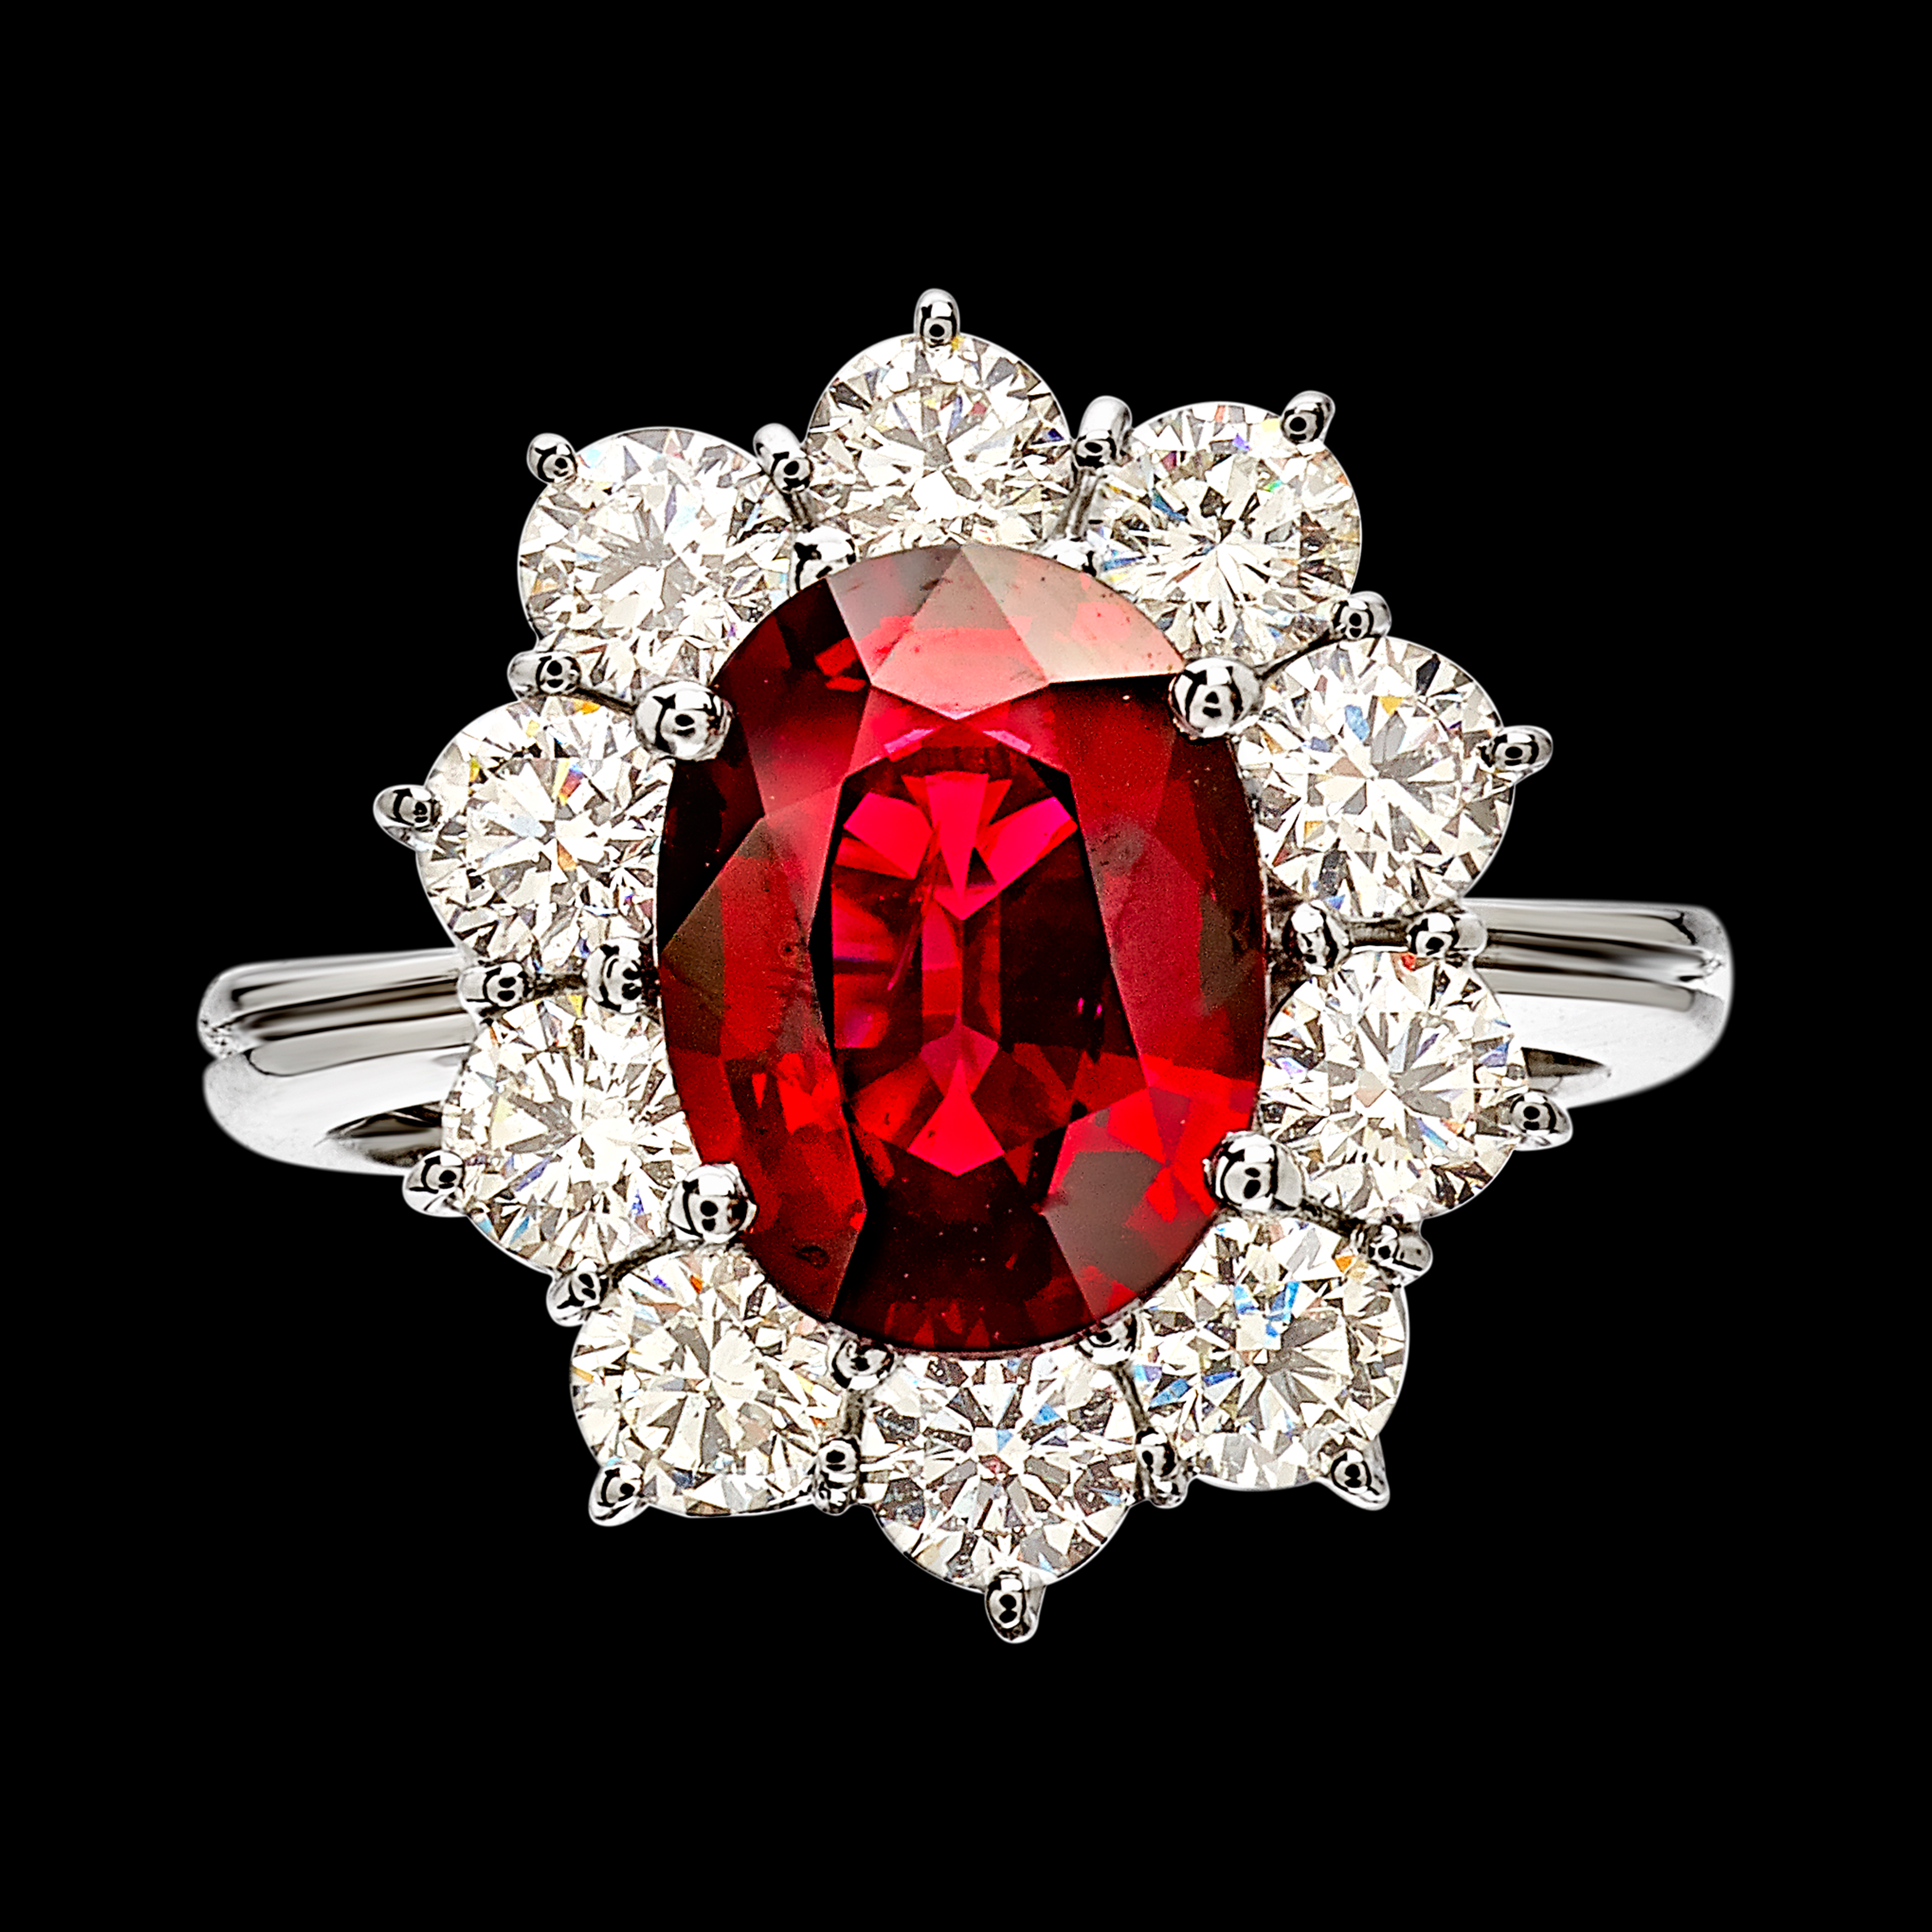 AN3207RB Massimo Raiteri pigeon blood ring diamonds classic timeless jewelry sangue di piccione anello diamanti classico contorno senza tempo